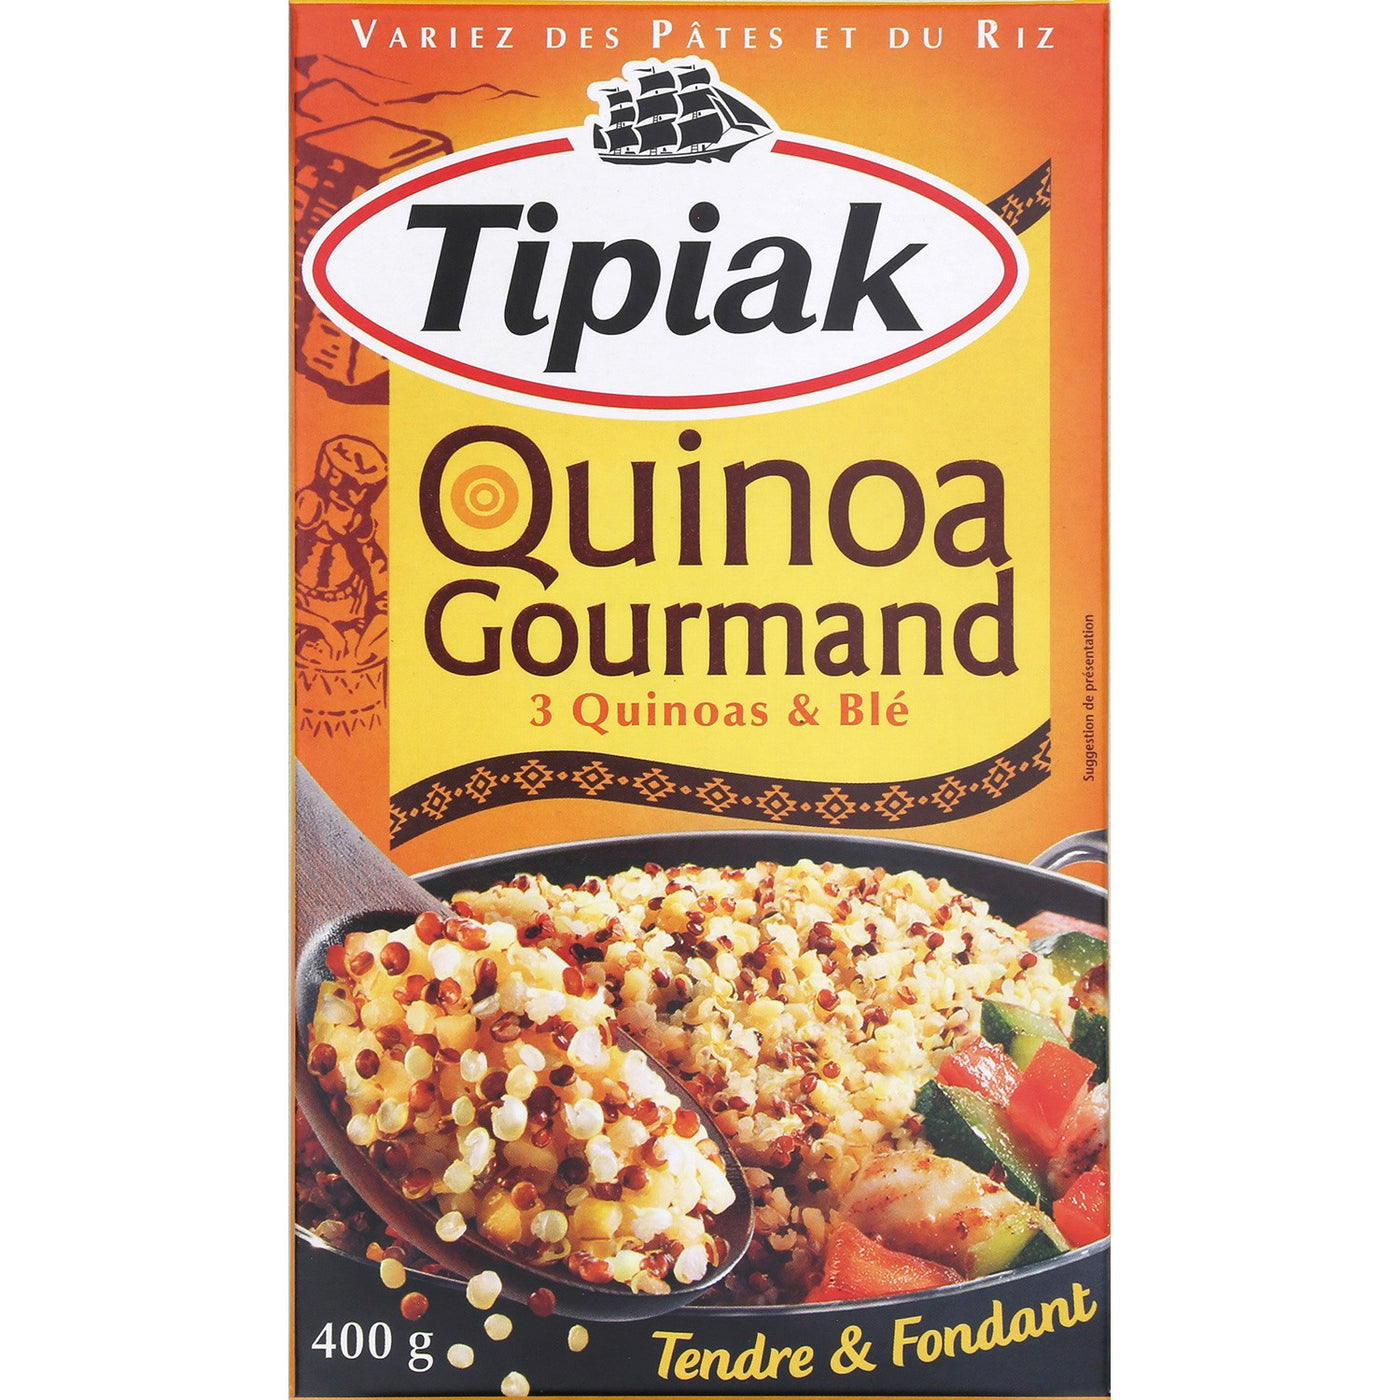 Tipiak Quinoa Gourmand 400g